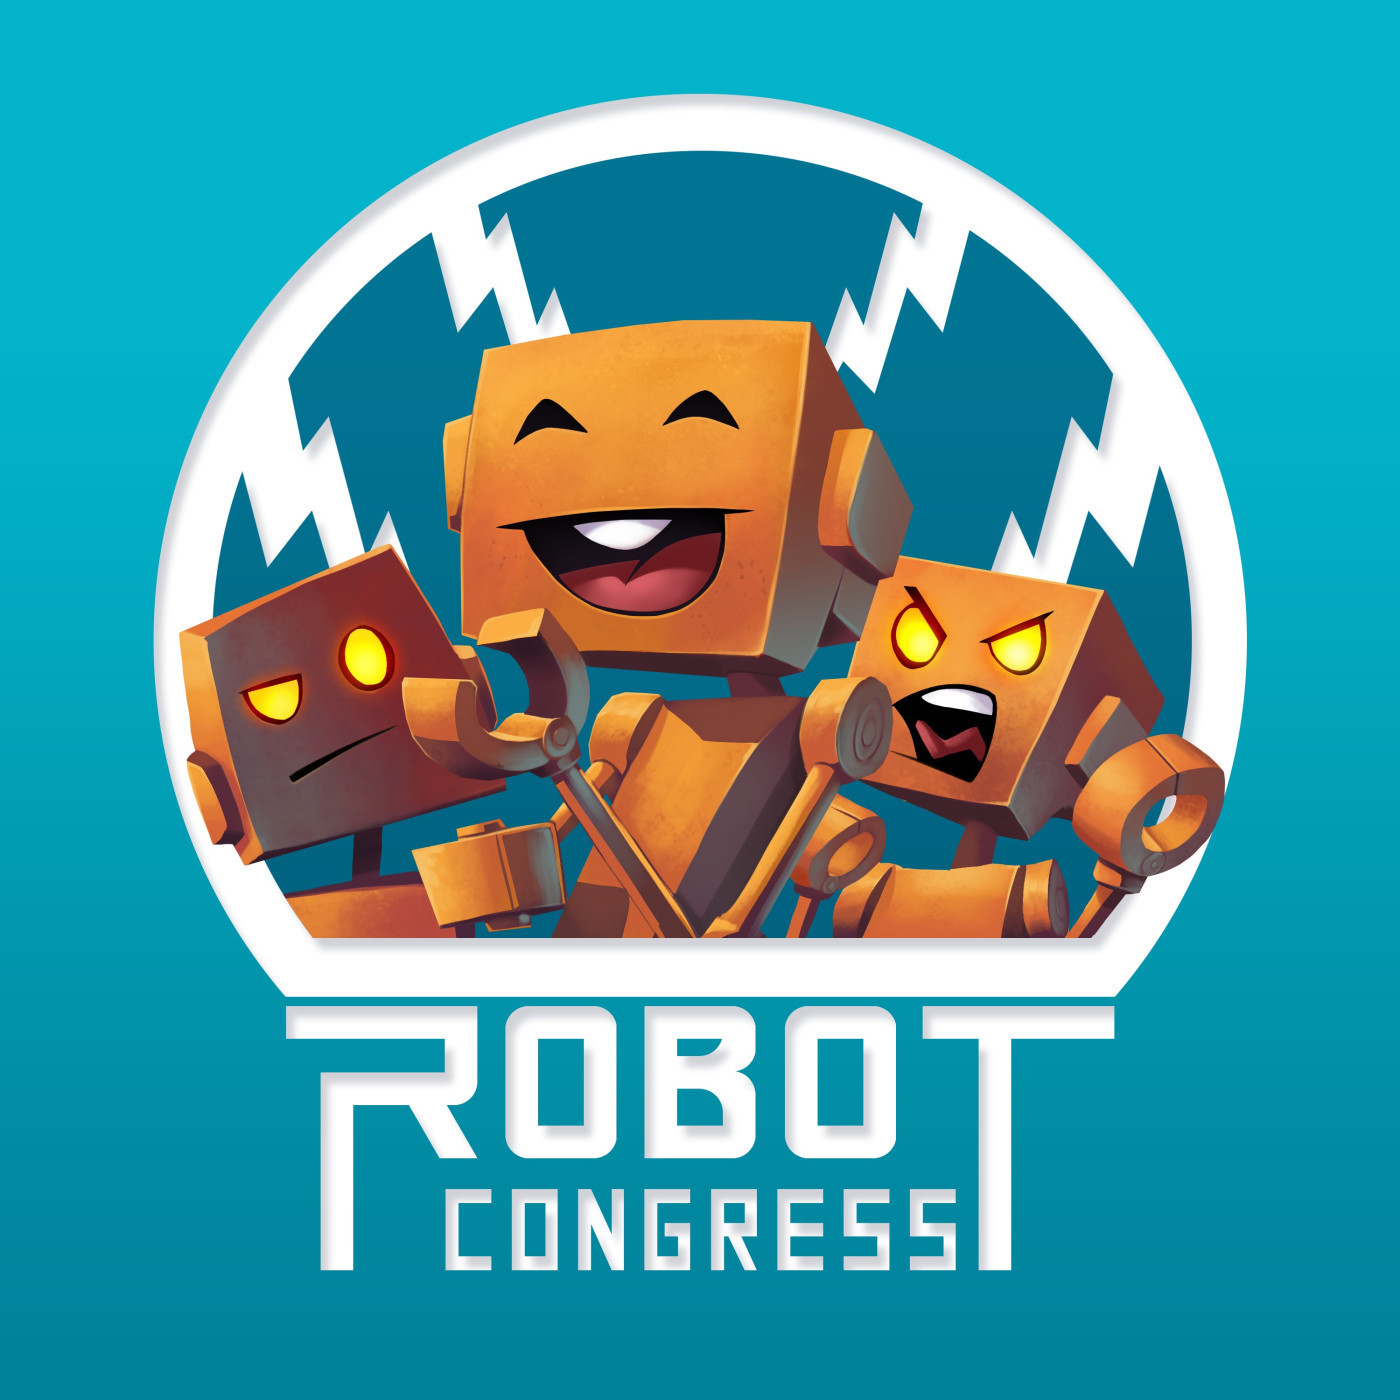 ROBOT CONGRESS - 68 - President Facebook